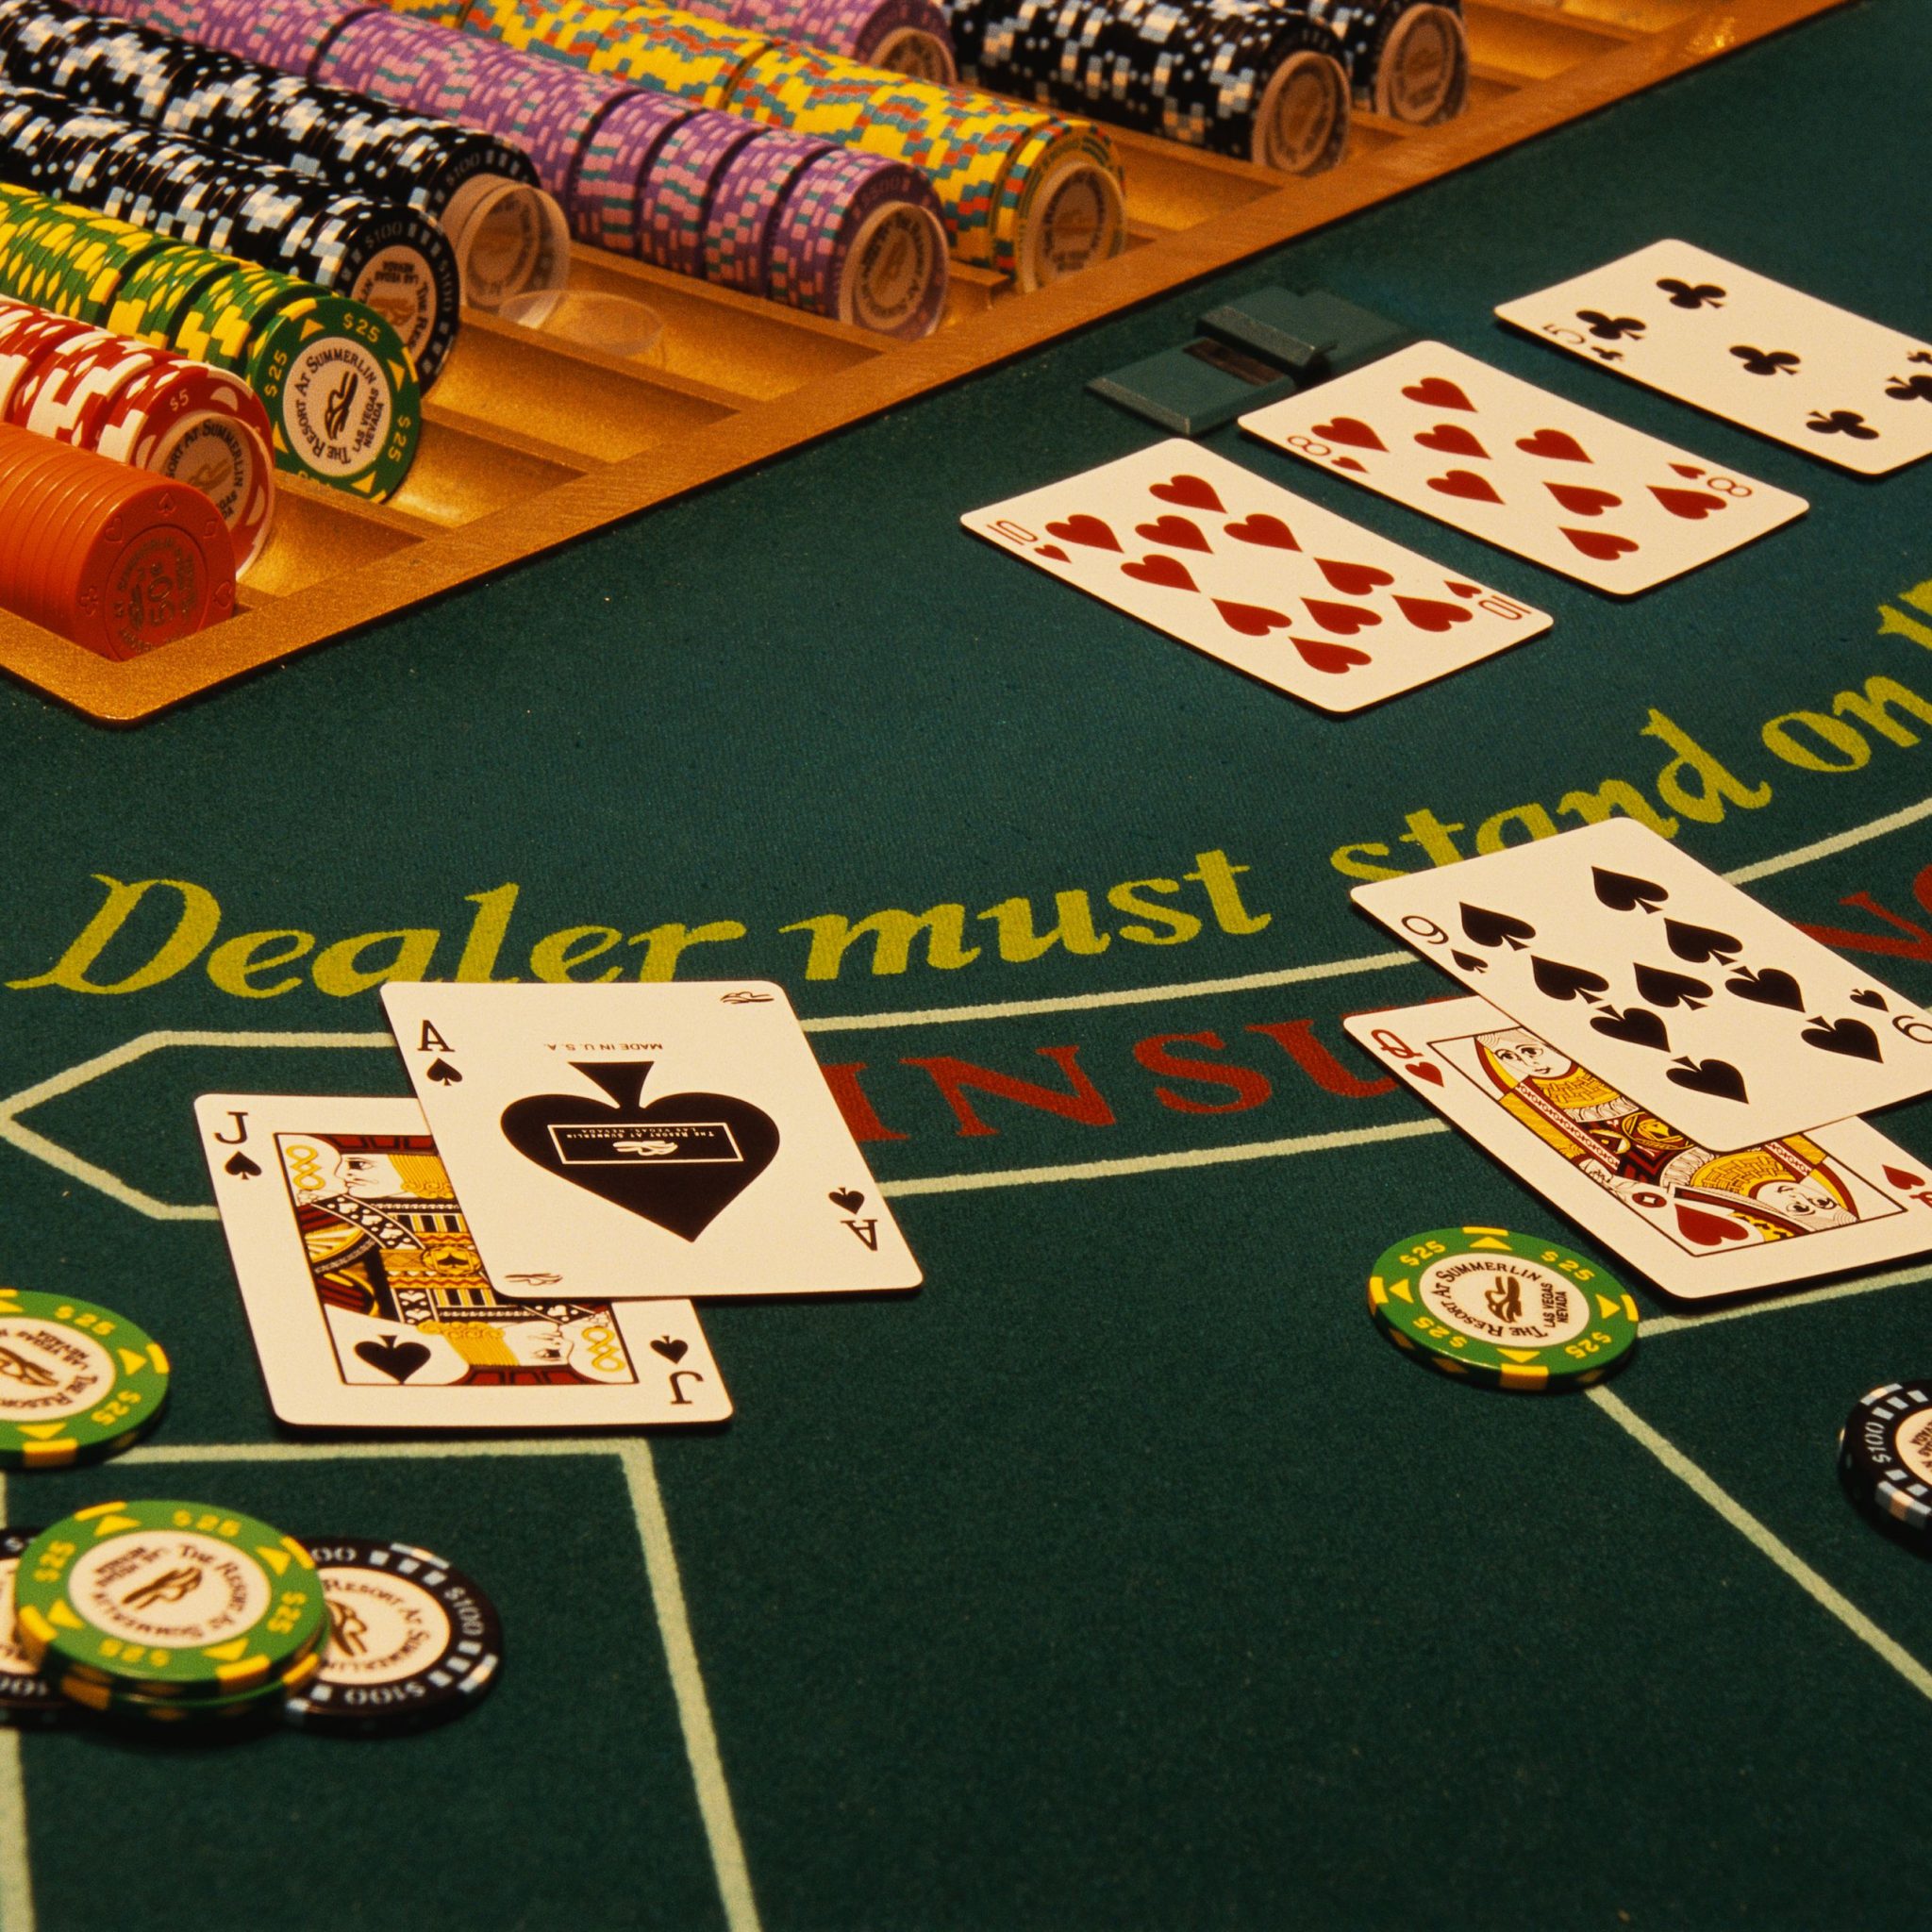 live blackjack online casinos india